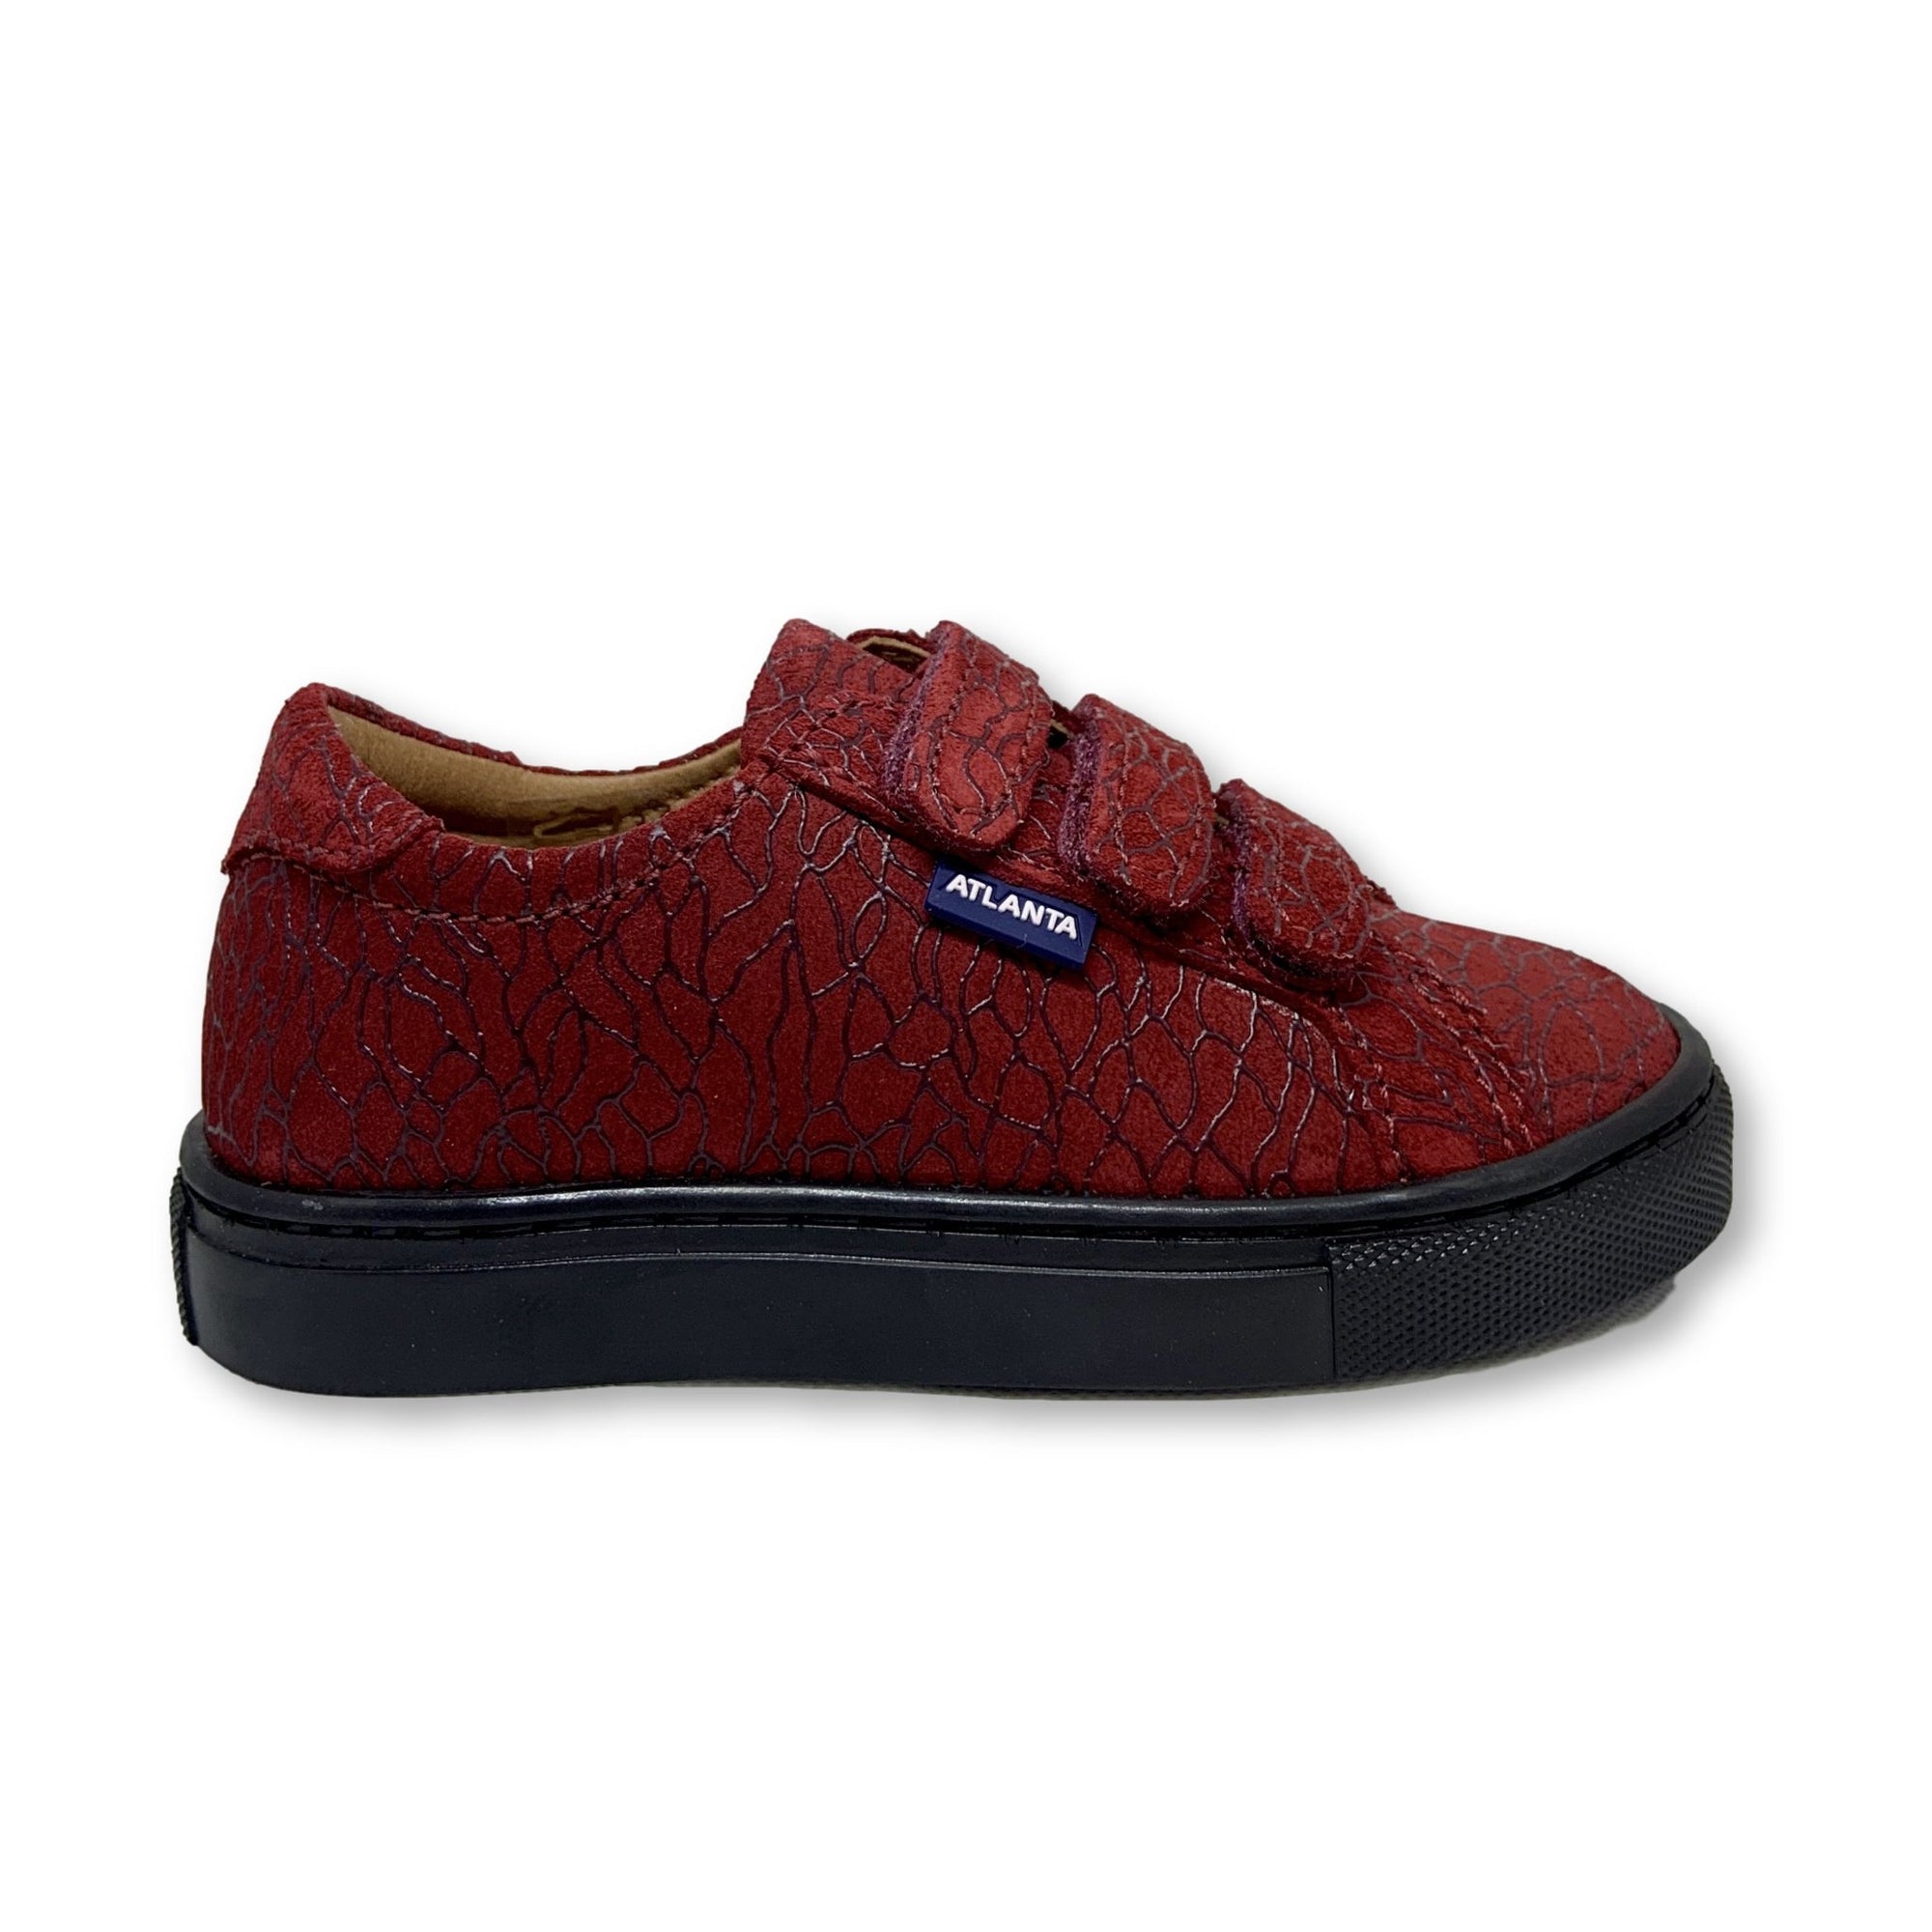 Atlanta Mocassin Red Textured Velcro Sneaker-Tassel Children Shoes